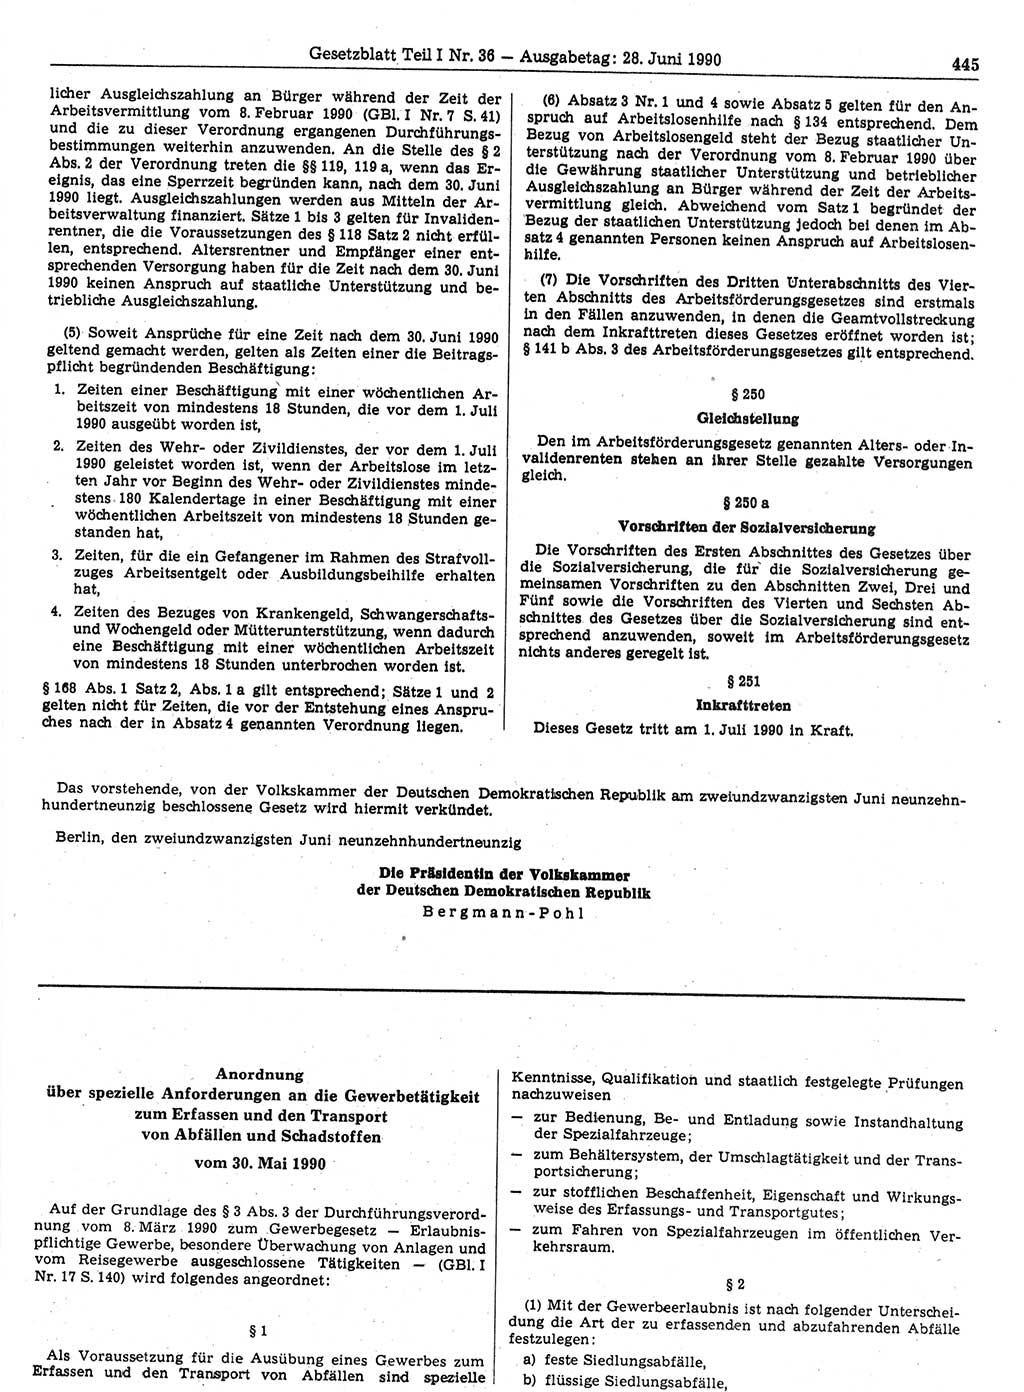 Gesetzblatt (GBl.) der Deutschen Demokratischen Republik (DDR) Teil Ⅰ 1990, Seite 445 (GBl. DDR Ⅰ 1990, S. 445)